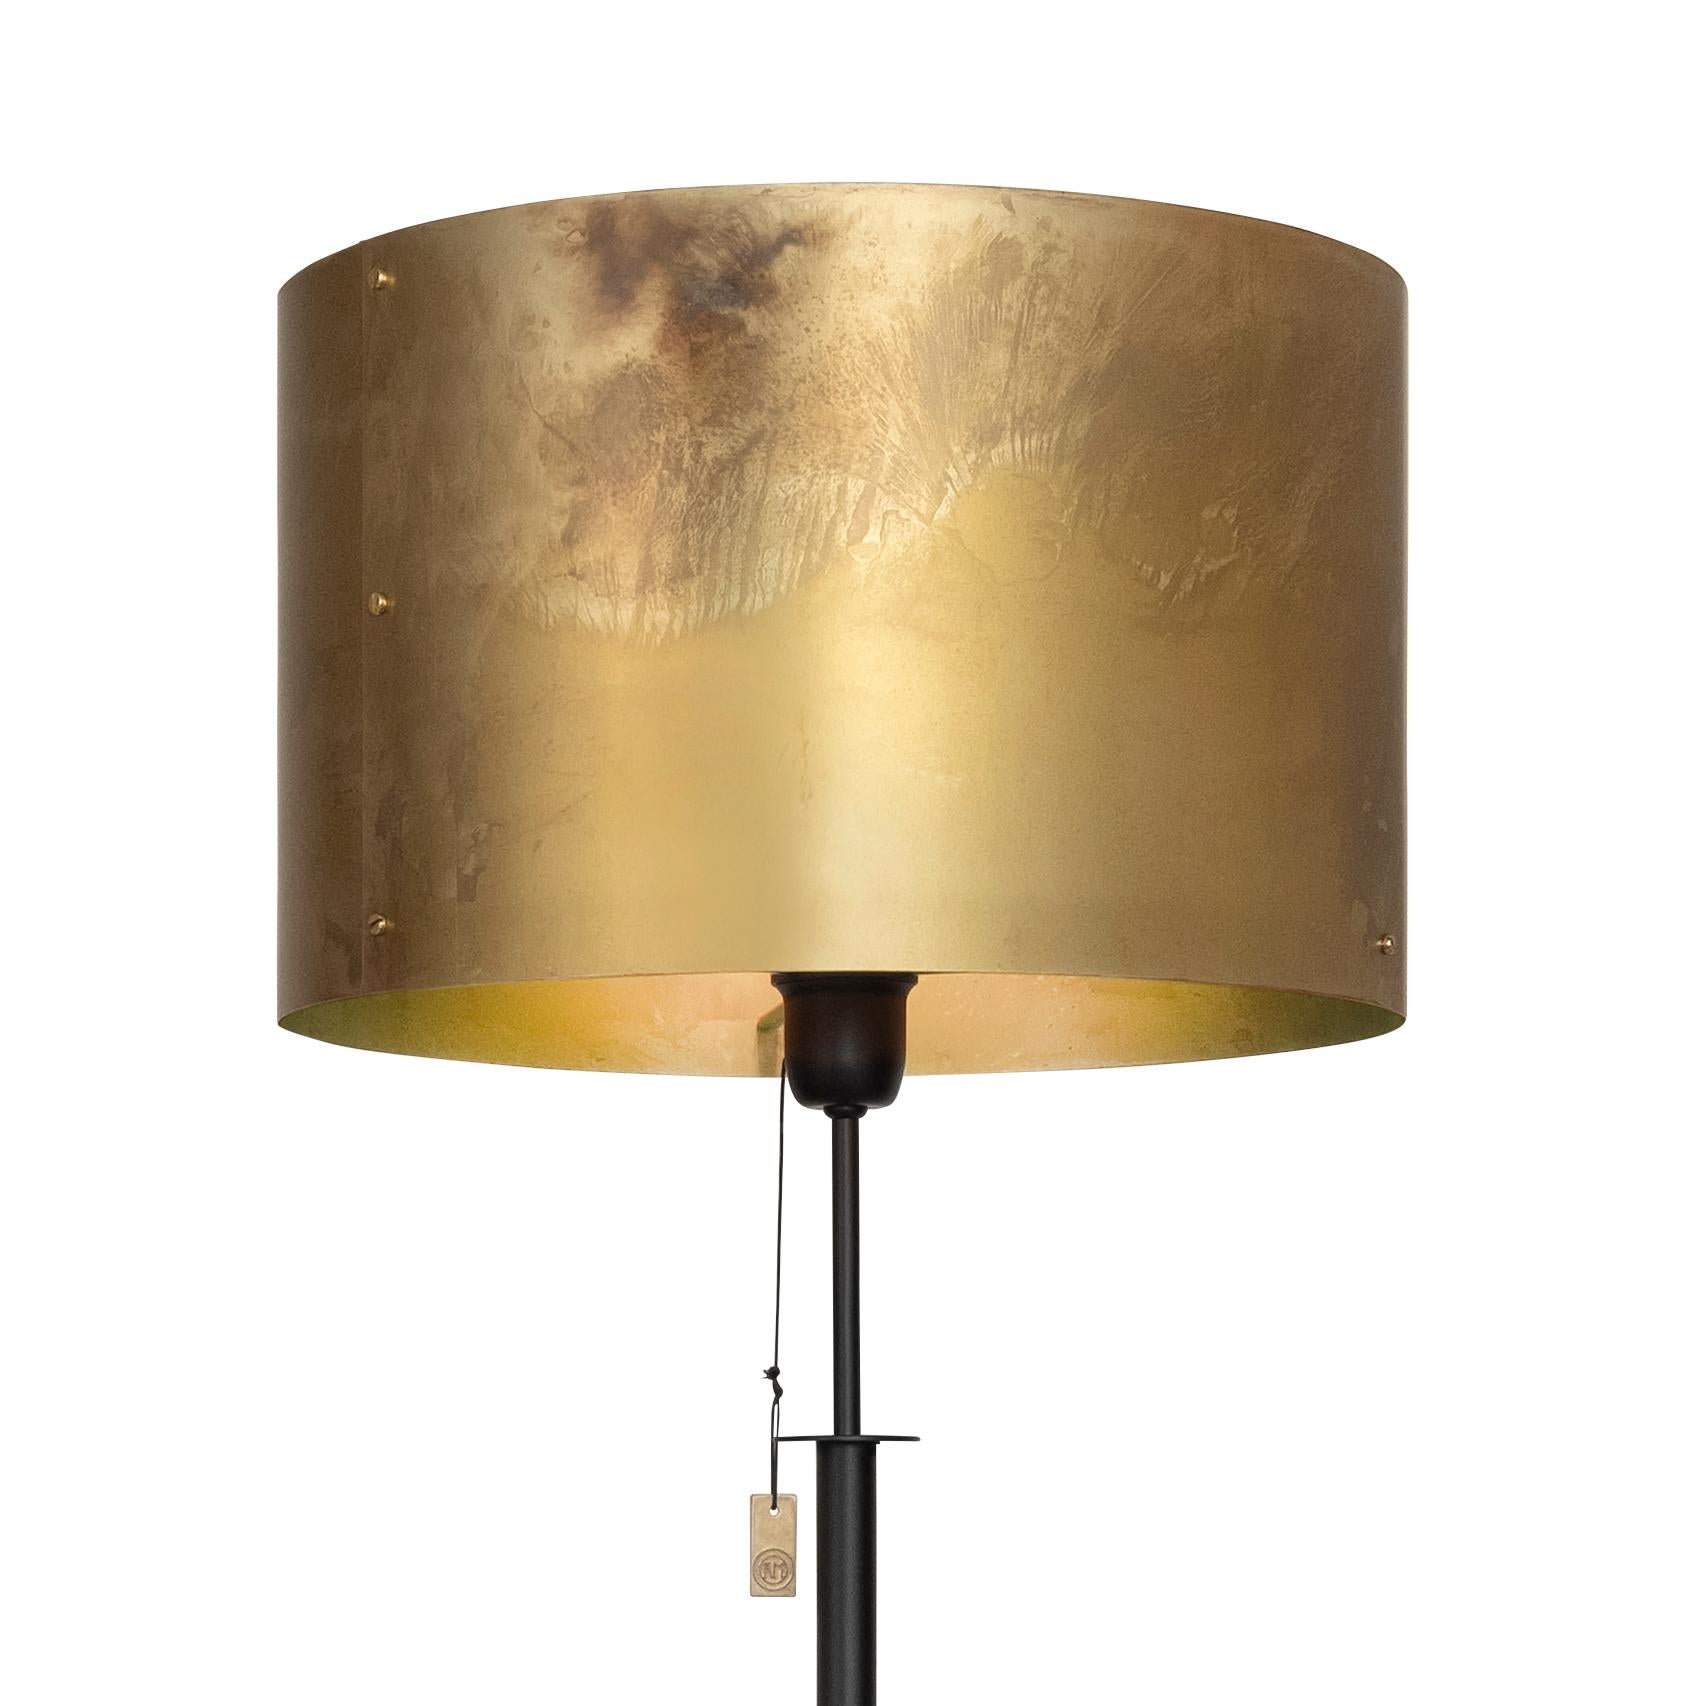 Lampe Modell Svep Stehleuchte entworfen von Konsthantverk und hergestellt von sich selbst.

Die Produktion von Lampen, Wandleuchten und Stehlampen erfolgt mit handwerklichen Techniken und mit den gleichen Materialien und Techniken wie bei den